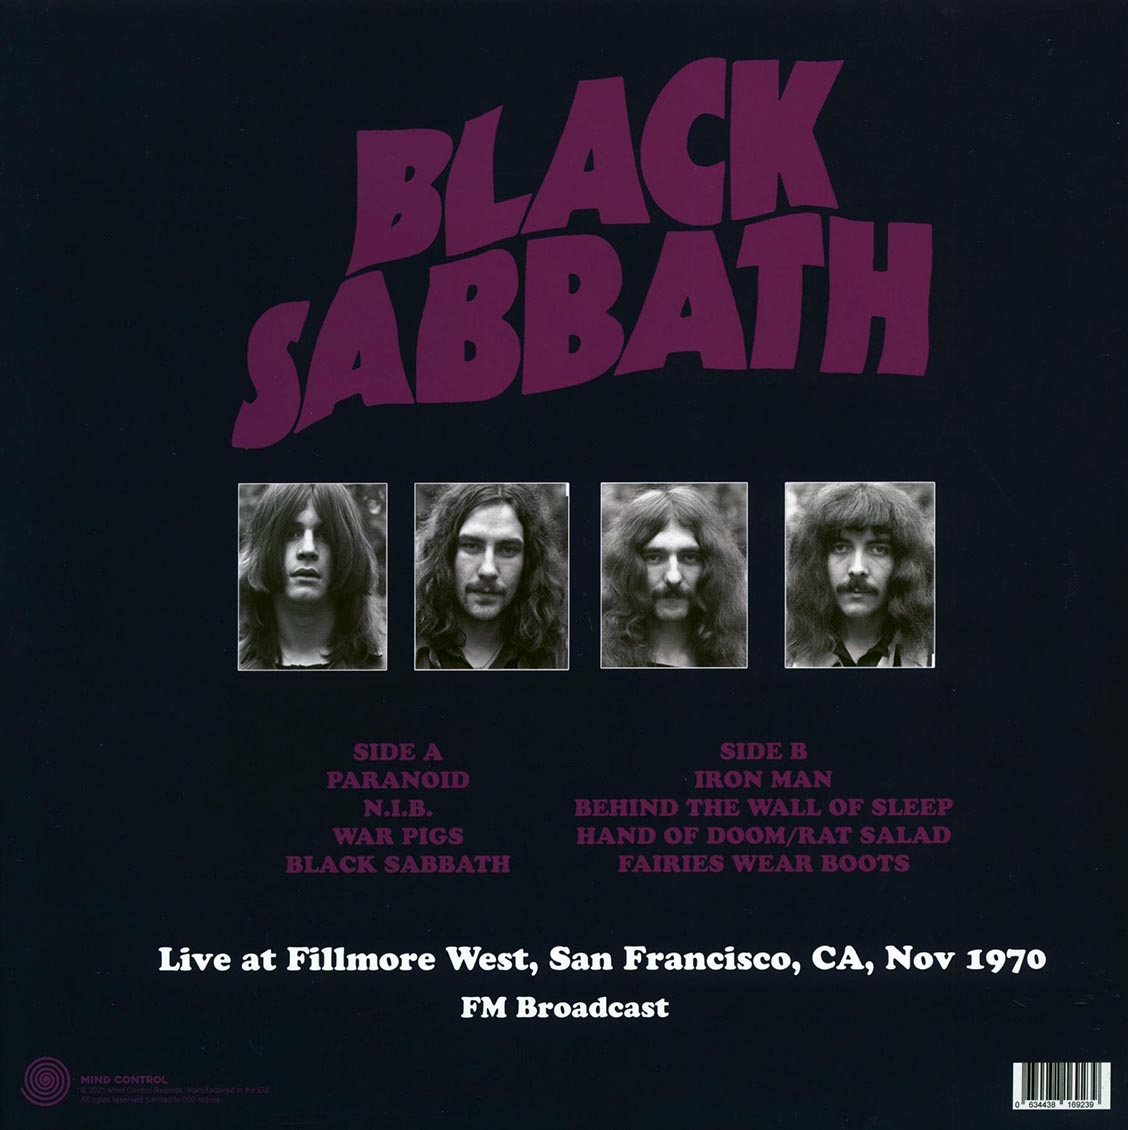 Black Sabbath - Live At Fillmore West, San Francisco, CA, Nov 1970 FM Broadcast (ltd. 500 copies made) (magenta vinyl) - Vinyl LP, LP